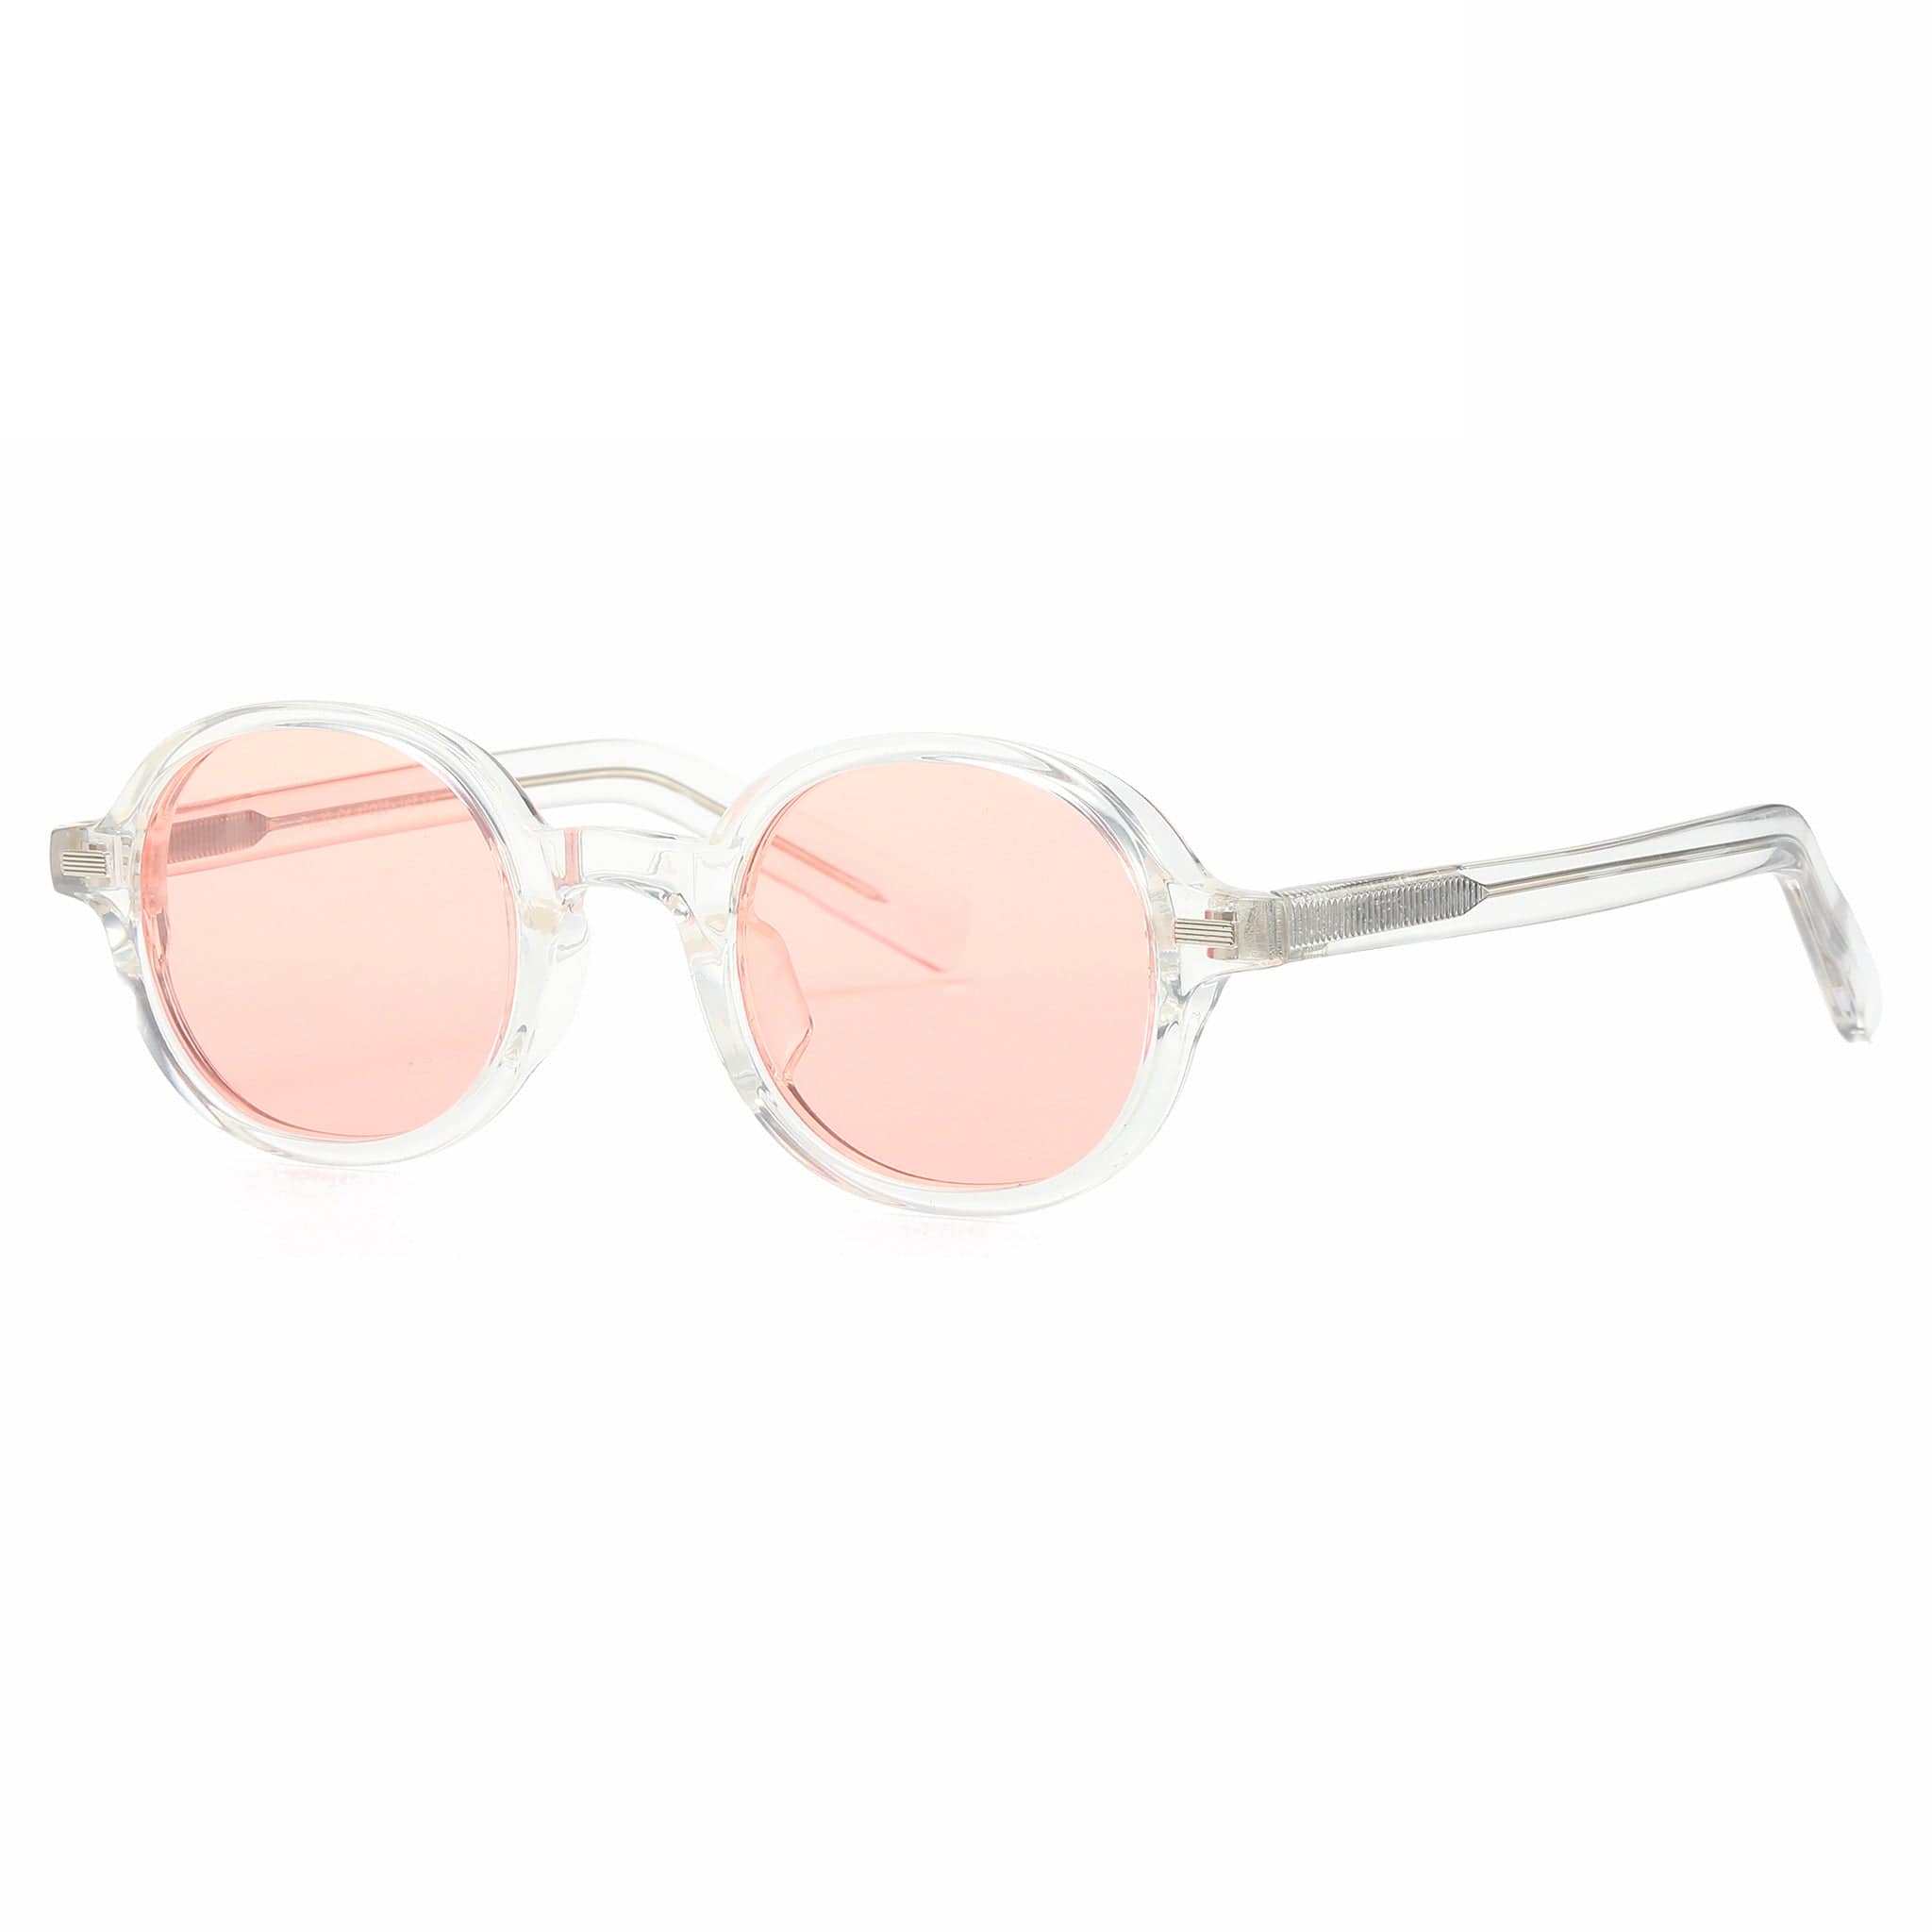 GIUSTIZIERI VECCHI Sunglasses Small / Light Apricot Paradise Prism Duo